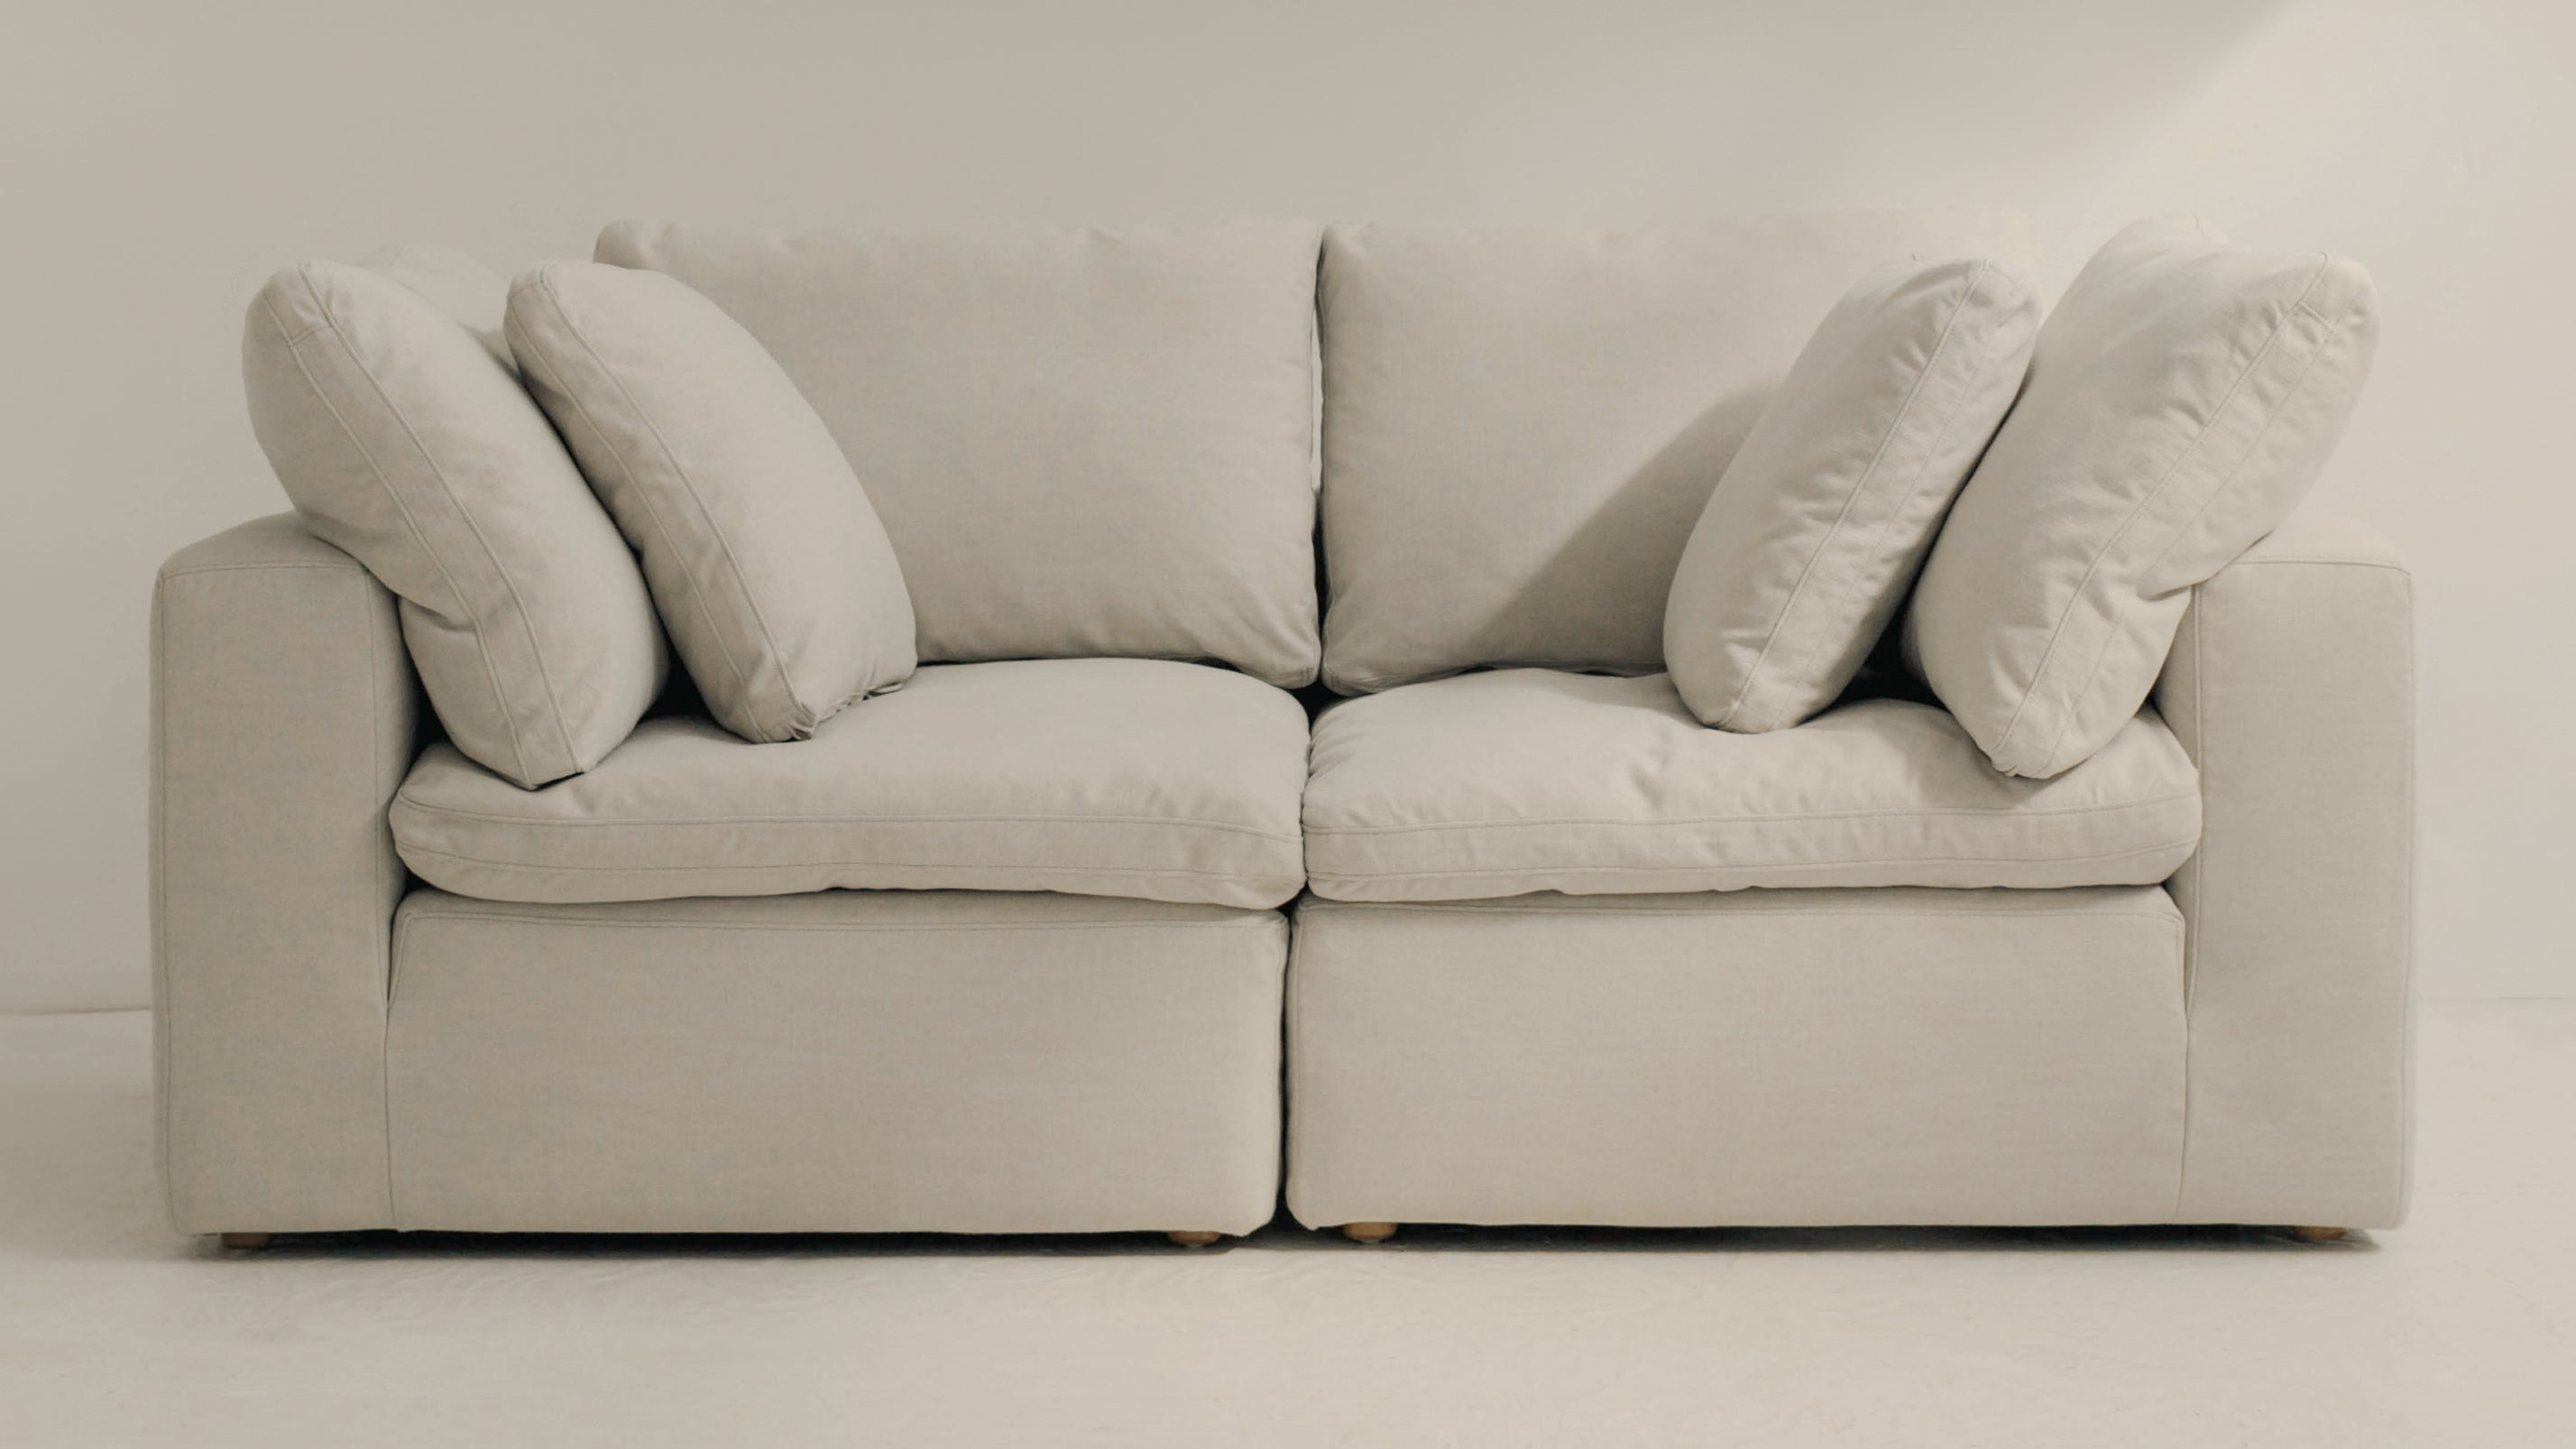 Movie Night™ 2-Piece Modular Sofa, Large, Clay - Image 3